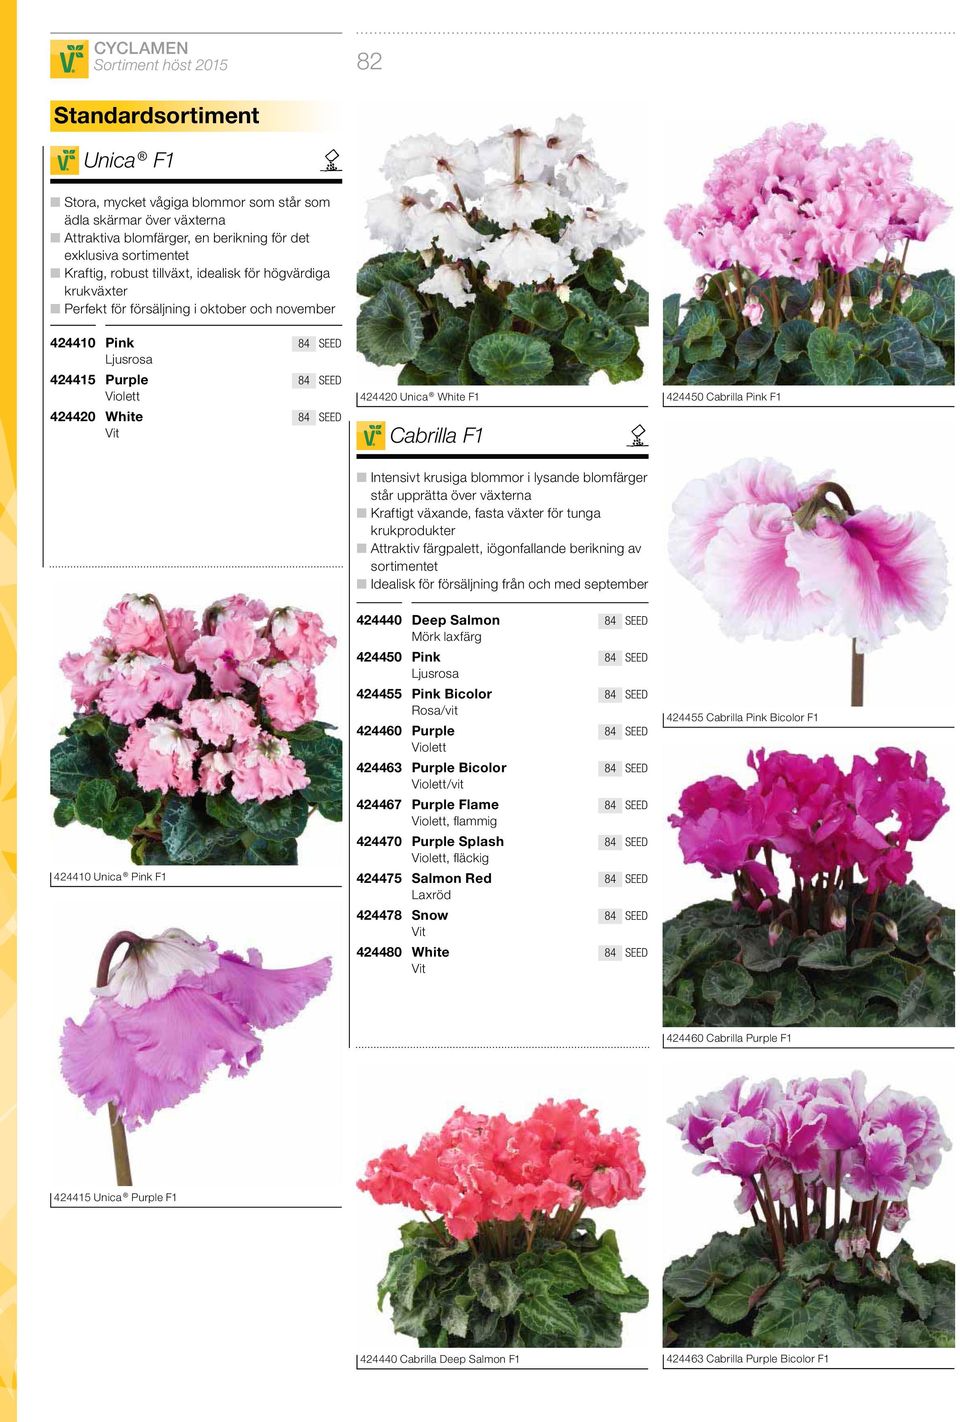 krusiga blommor i lysande blomfärger står upprätta över växterna Kraftigt växande, fasta växter för tunga krukprodukter Attraktiv färgpalett, iögonfallande berikning av sortimentet Idealisk för